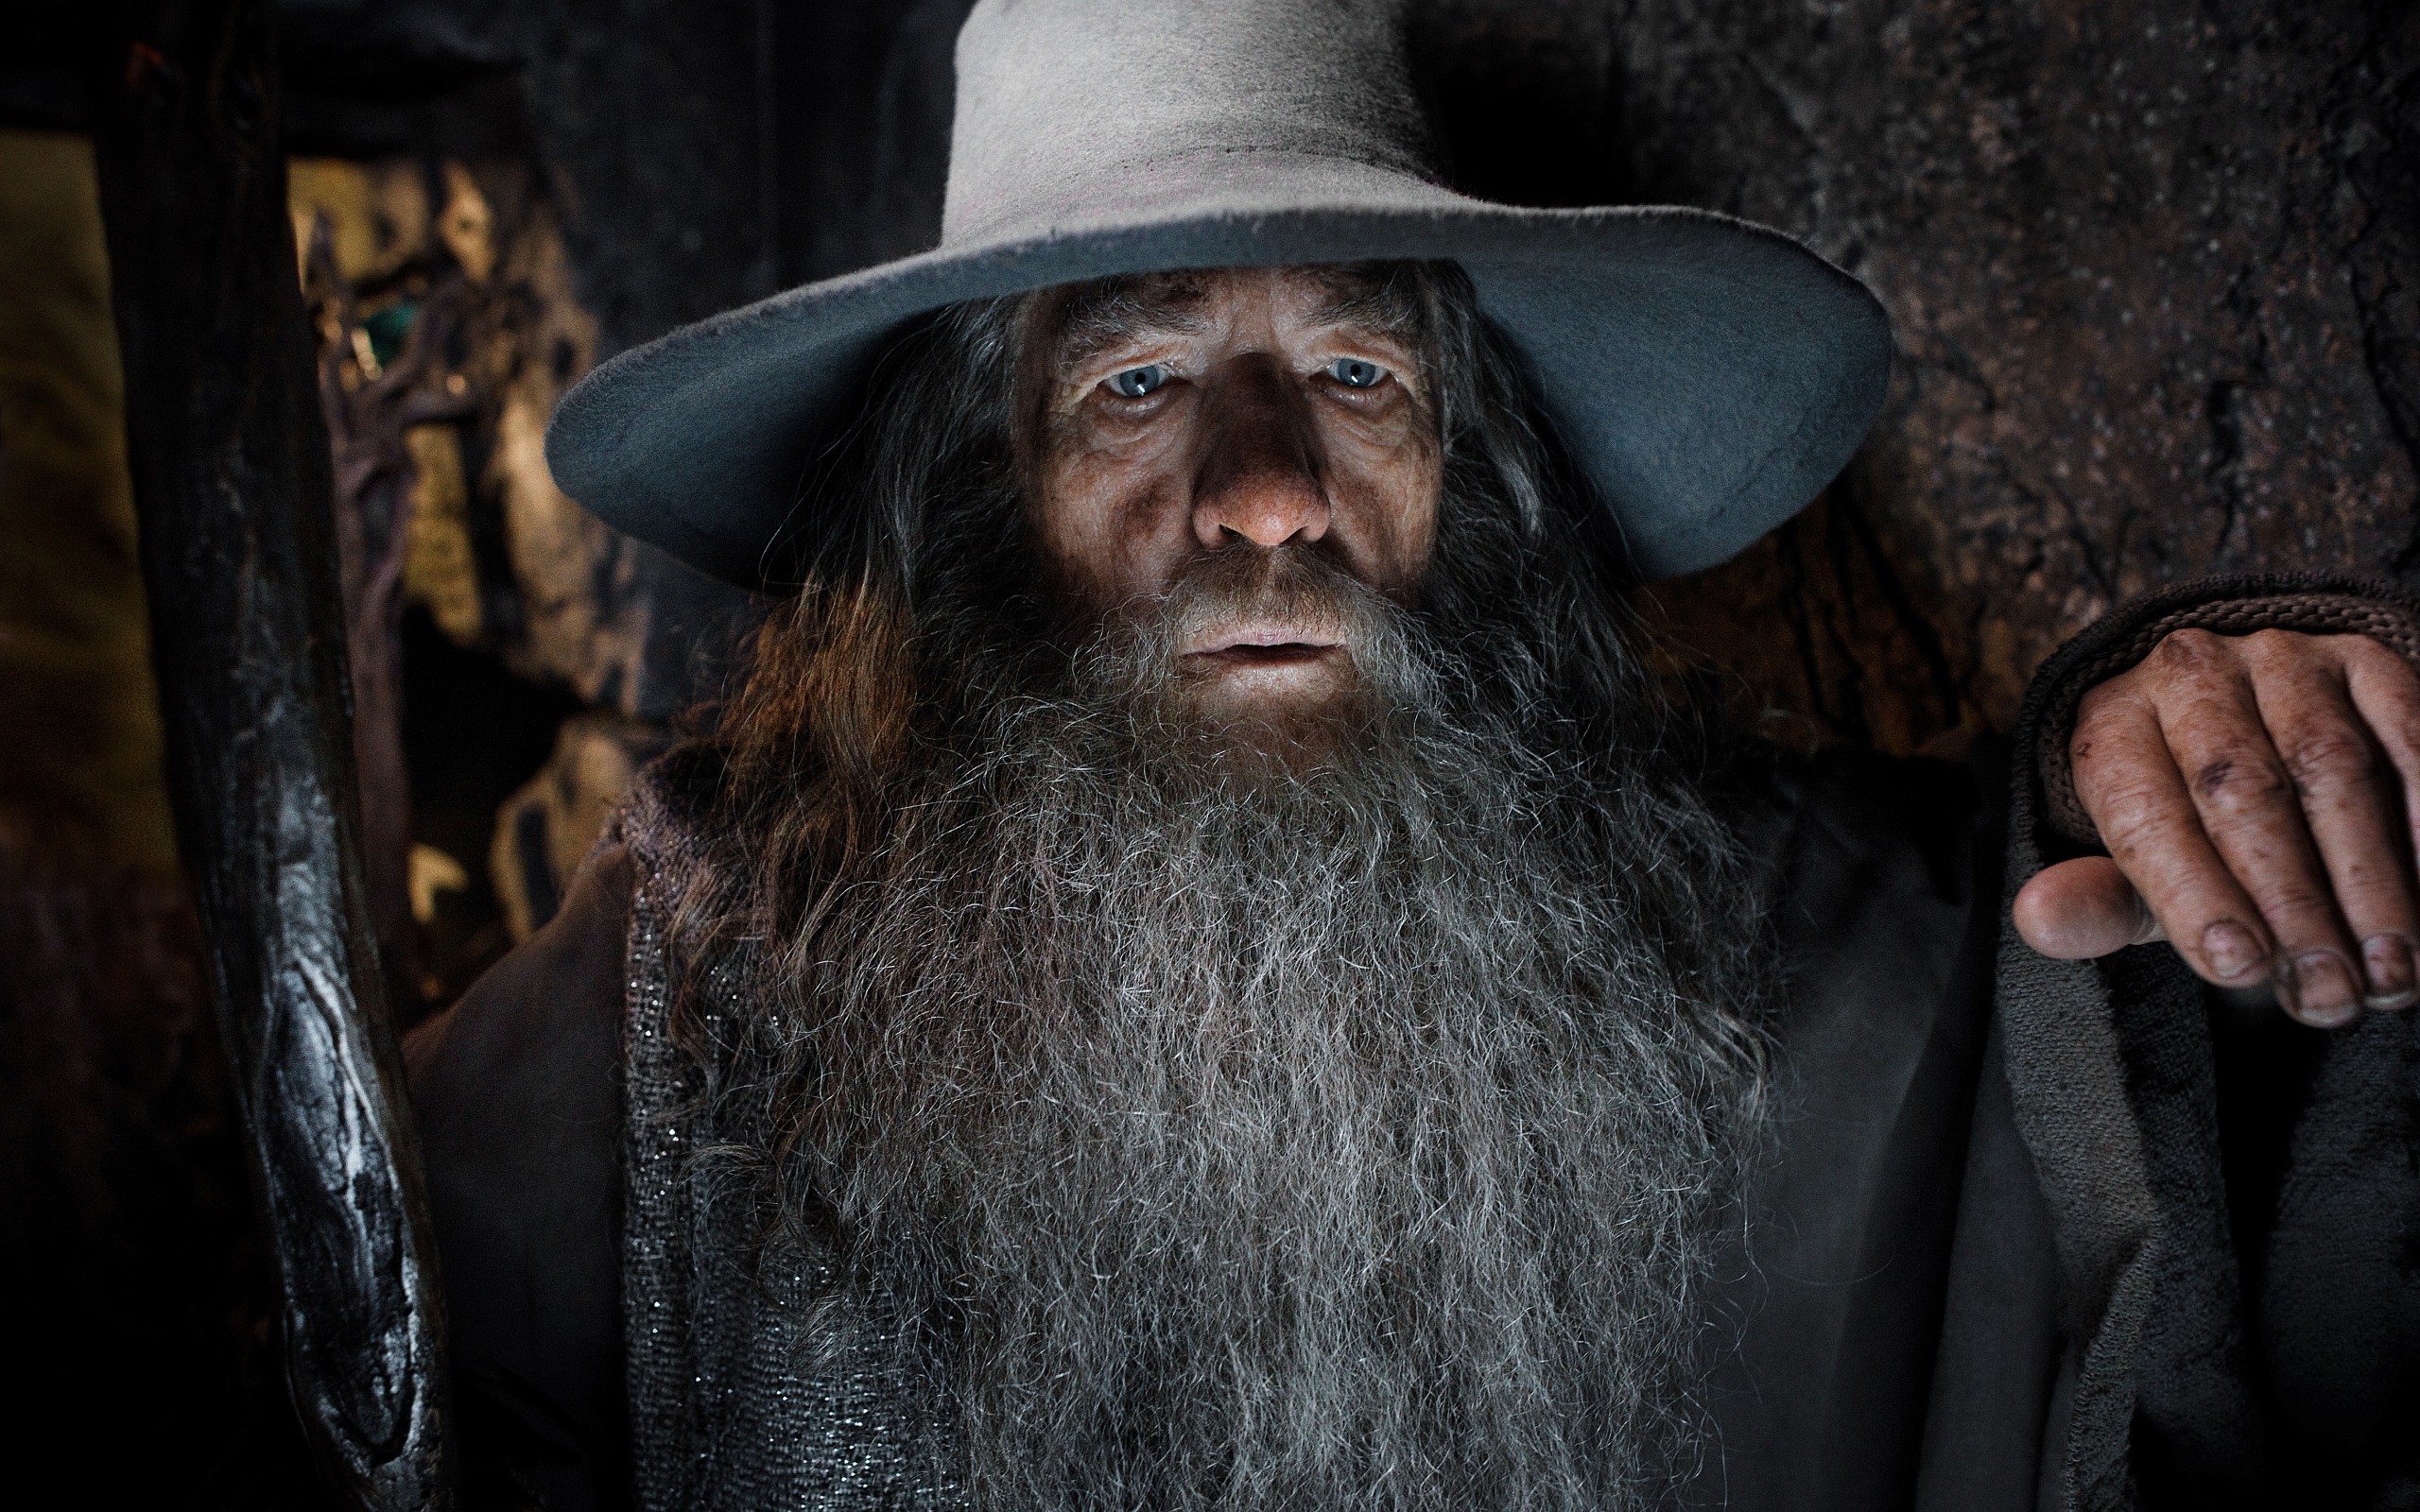 People 2560x1600 Gandalf The Hobbit The Hobbit: The Desolation of Smaug Ian McKellen men actor wizard beard